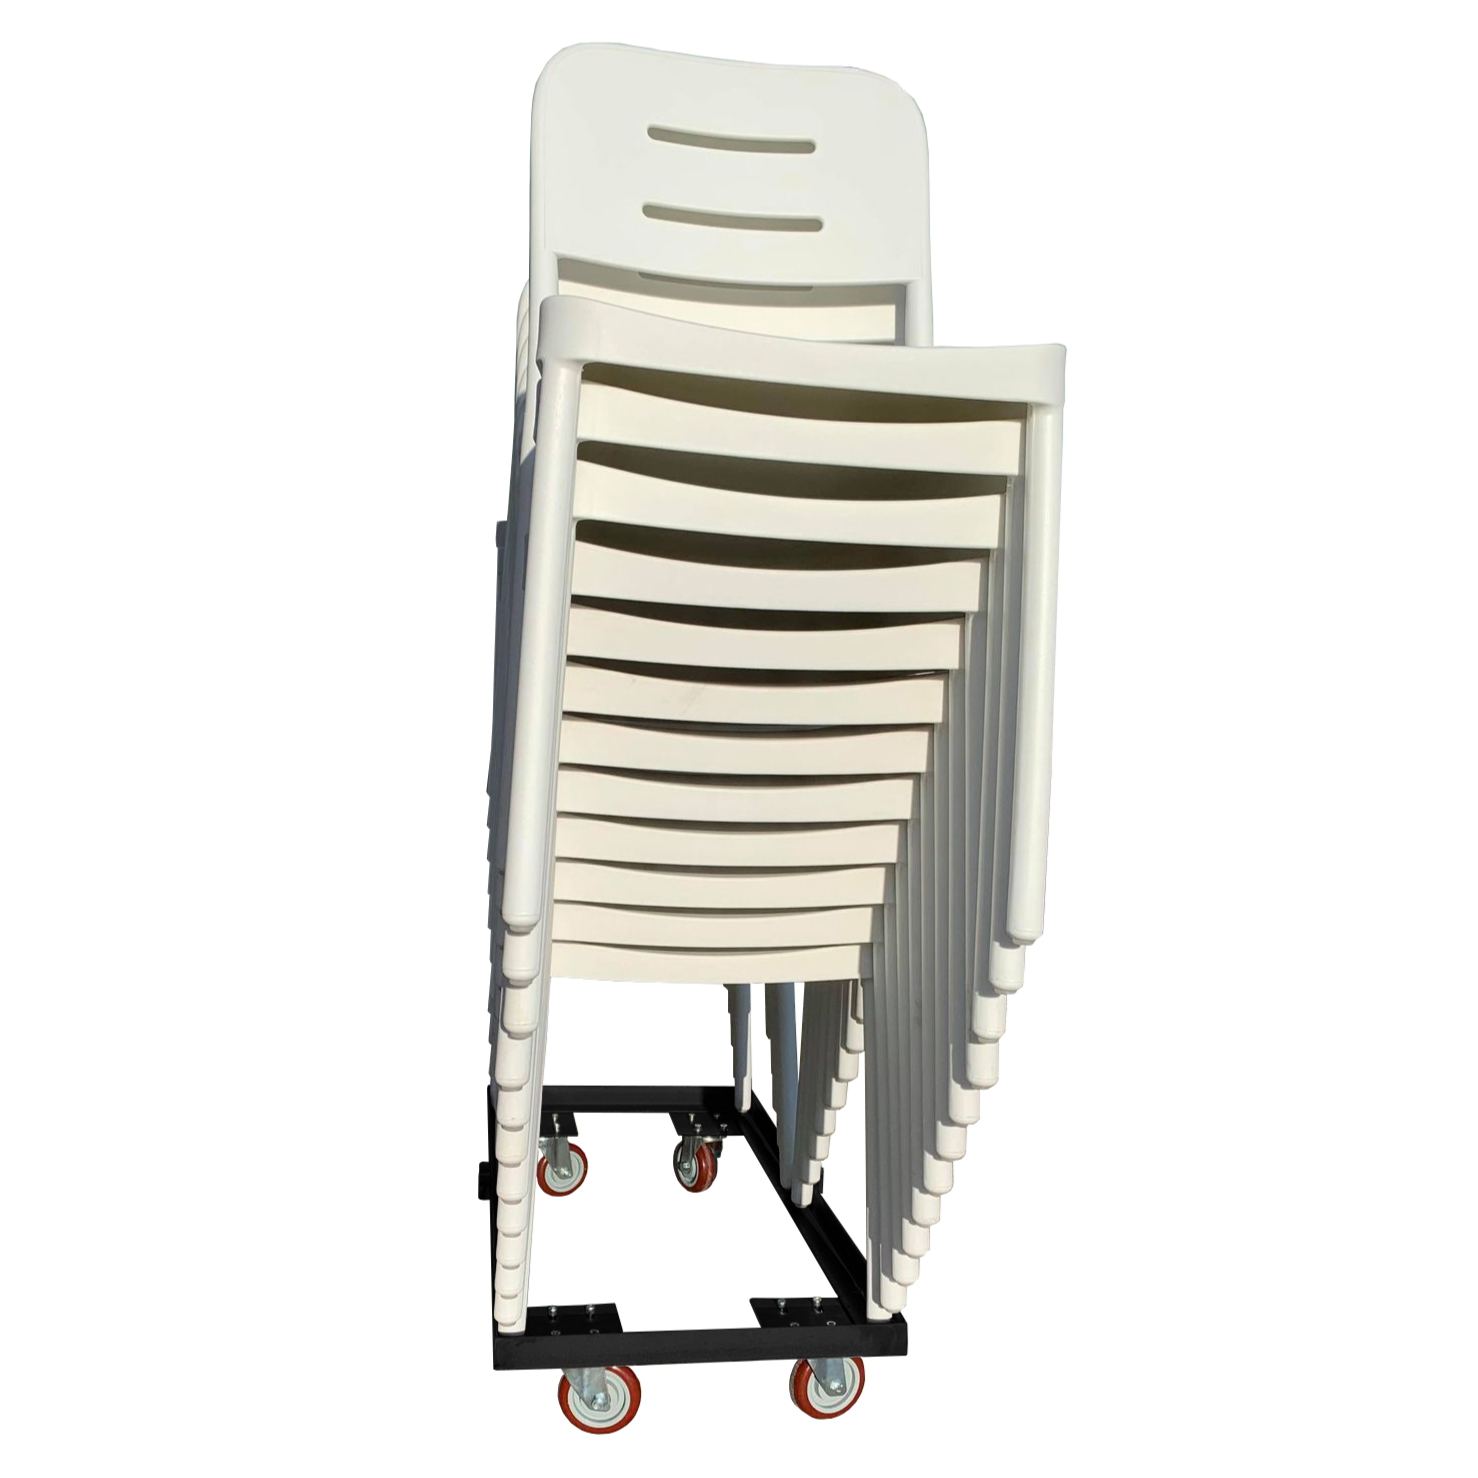 Chariot de chaises empilables / capacité 16-24 chaises